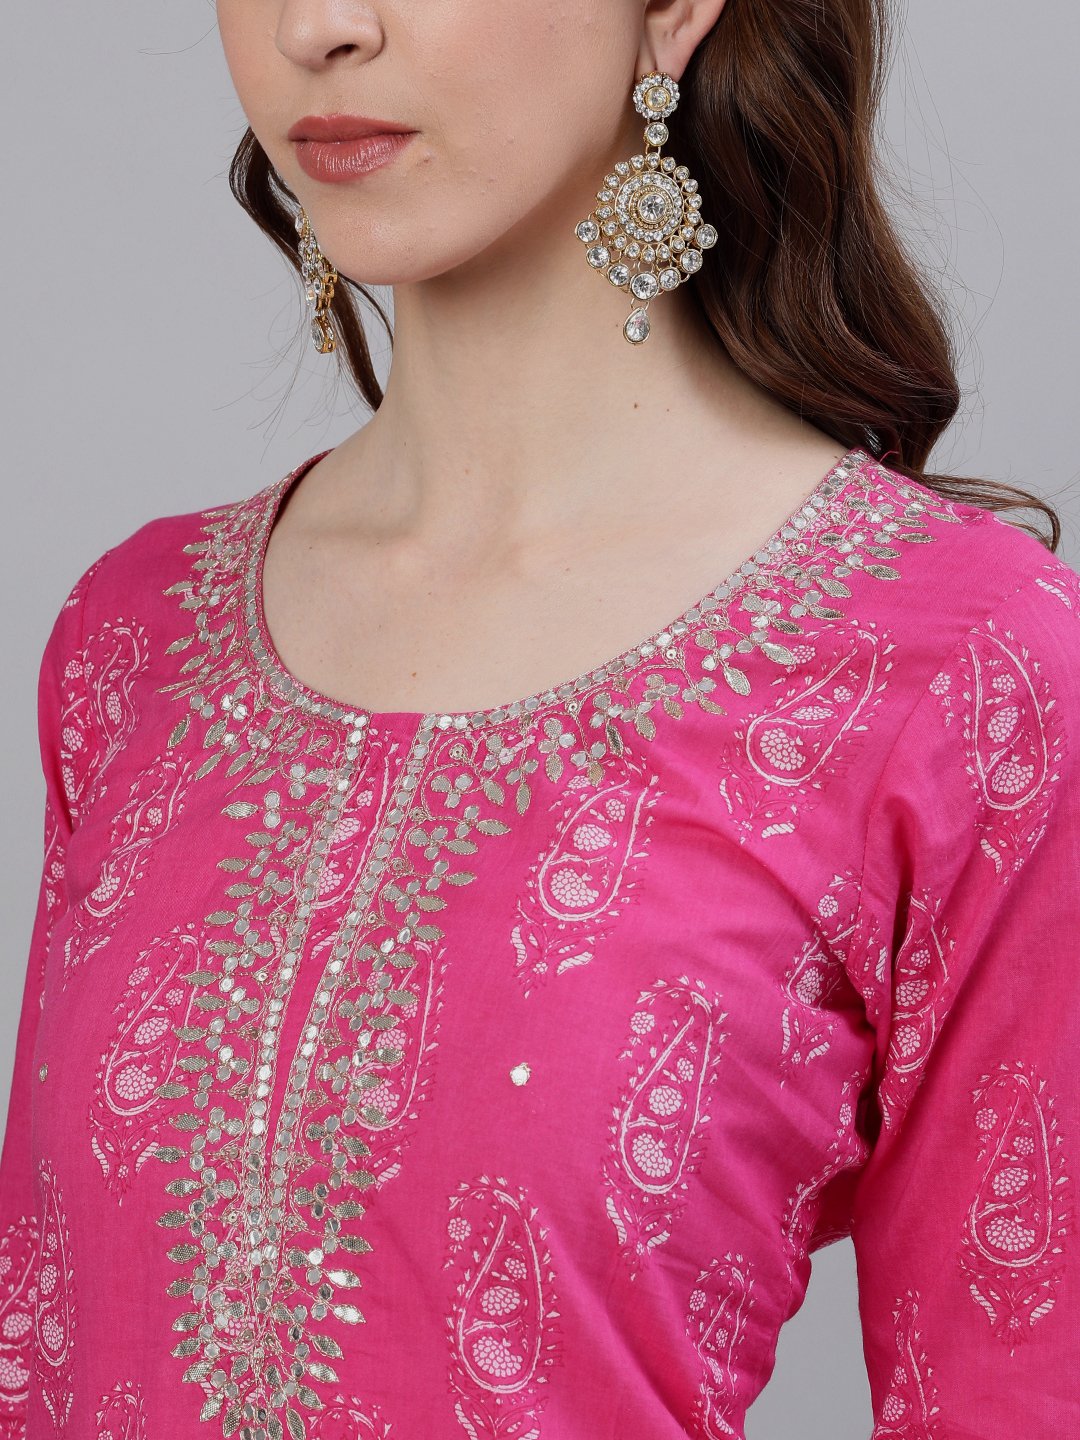 Ishin Women's Cotton Pink Gota Patti Embellished A-Line Kurta